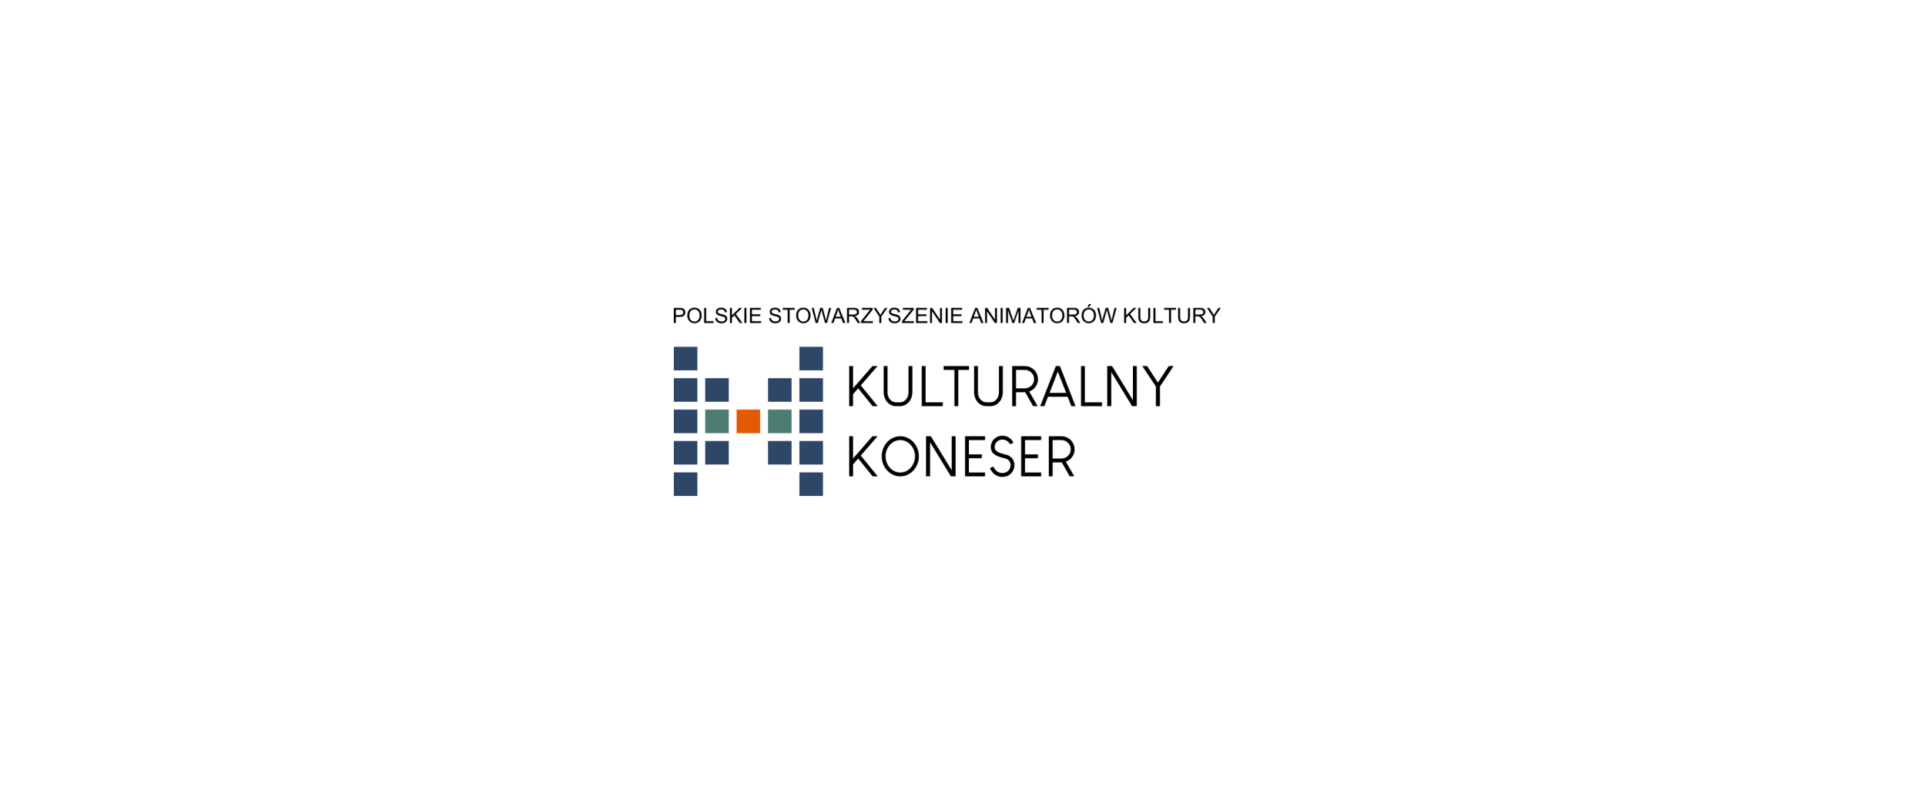 Polskie Stowarzyszenie Animatorów Kultury “Kulturalny Koneser” w prasie